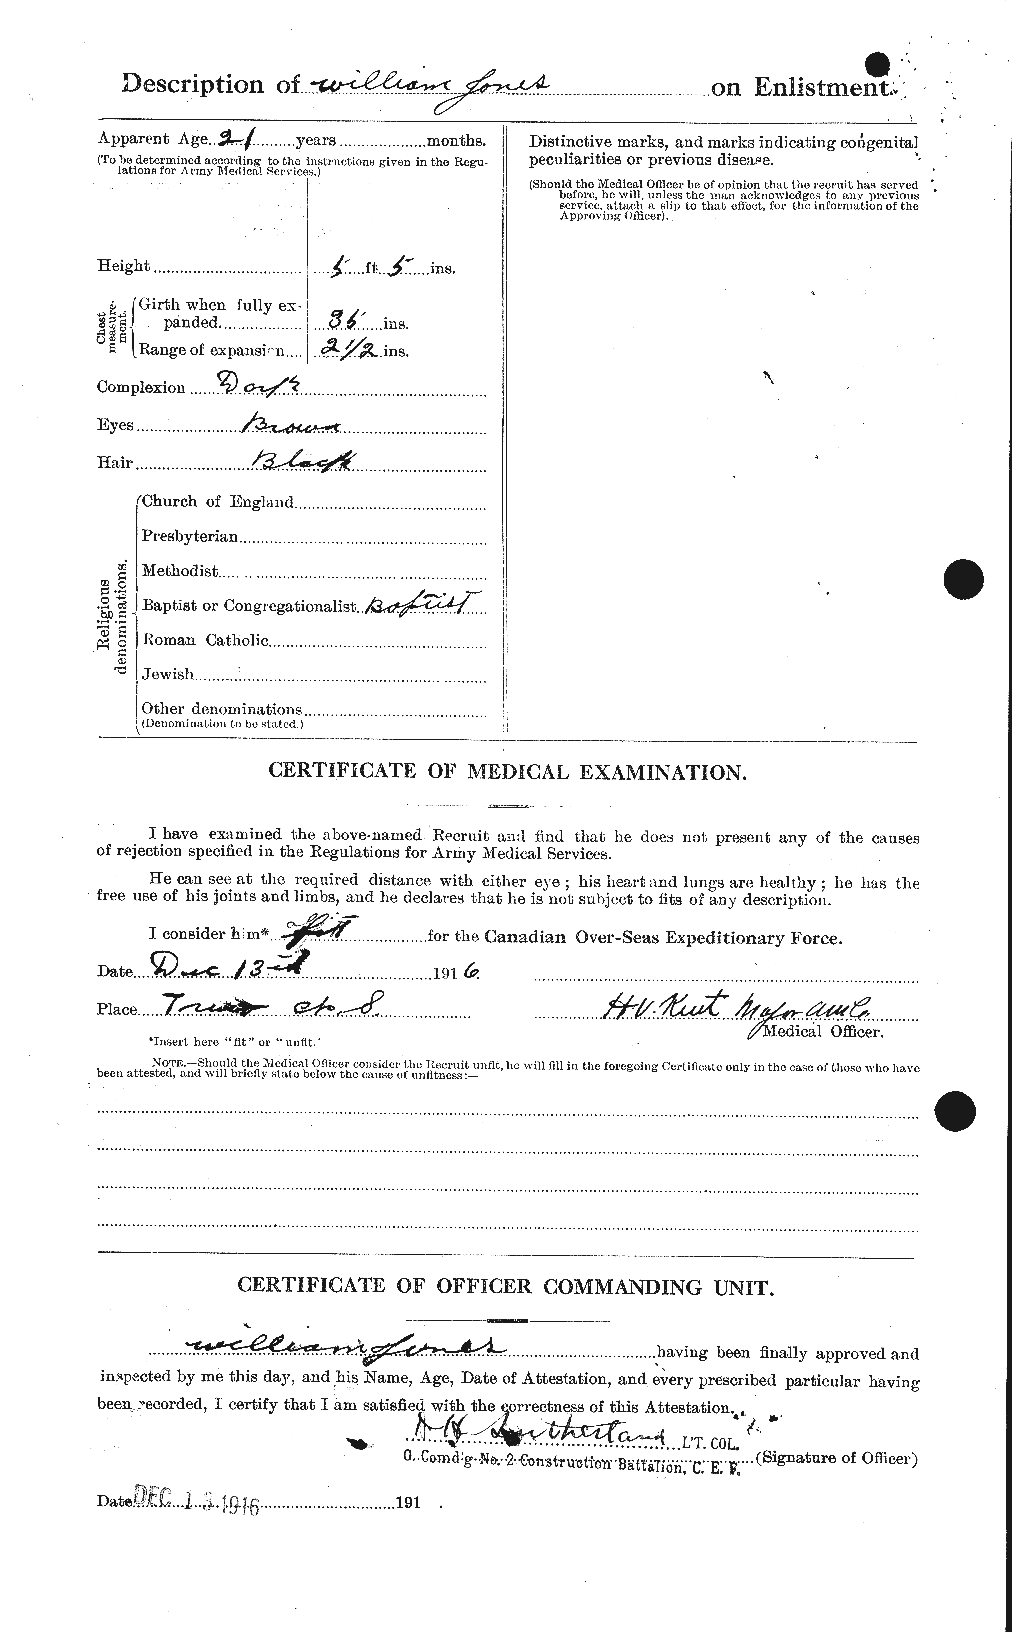 Dossiers du Personnel de la Première Guerre mondiale - CEC 428442b